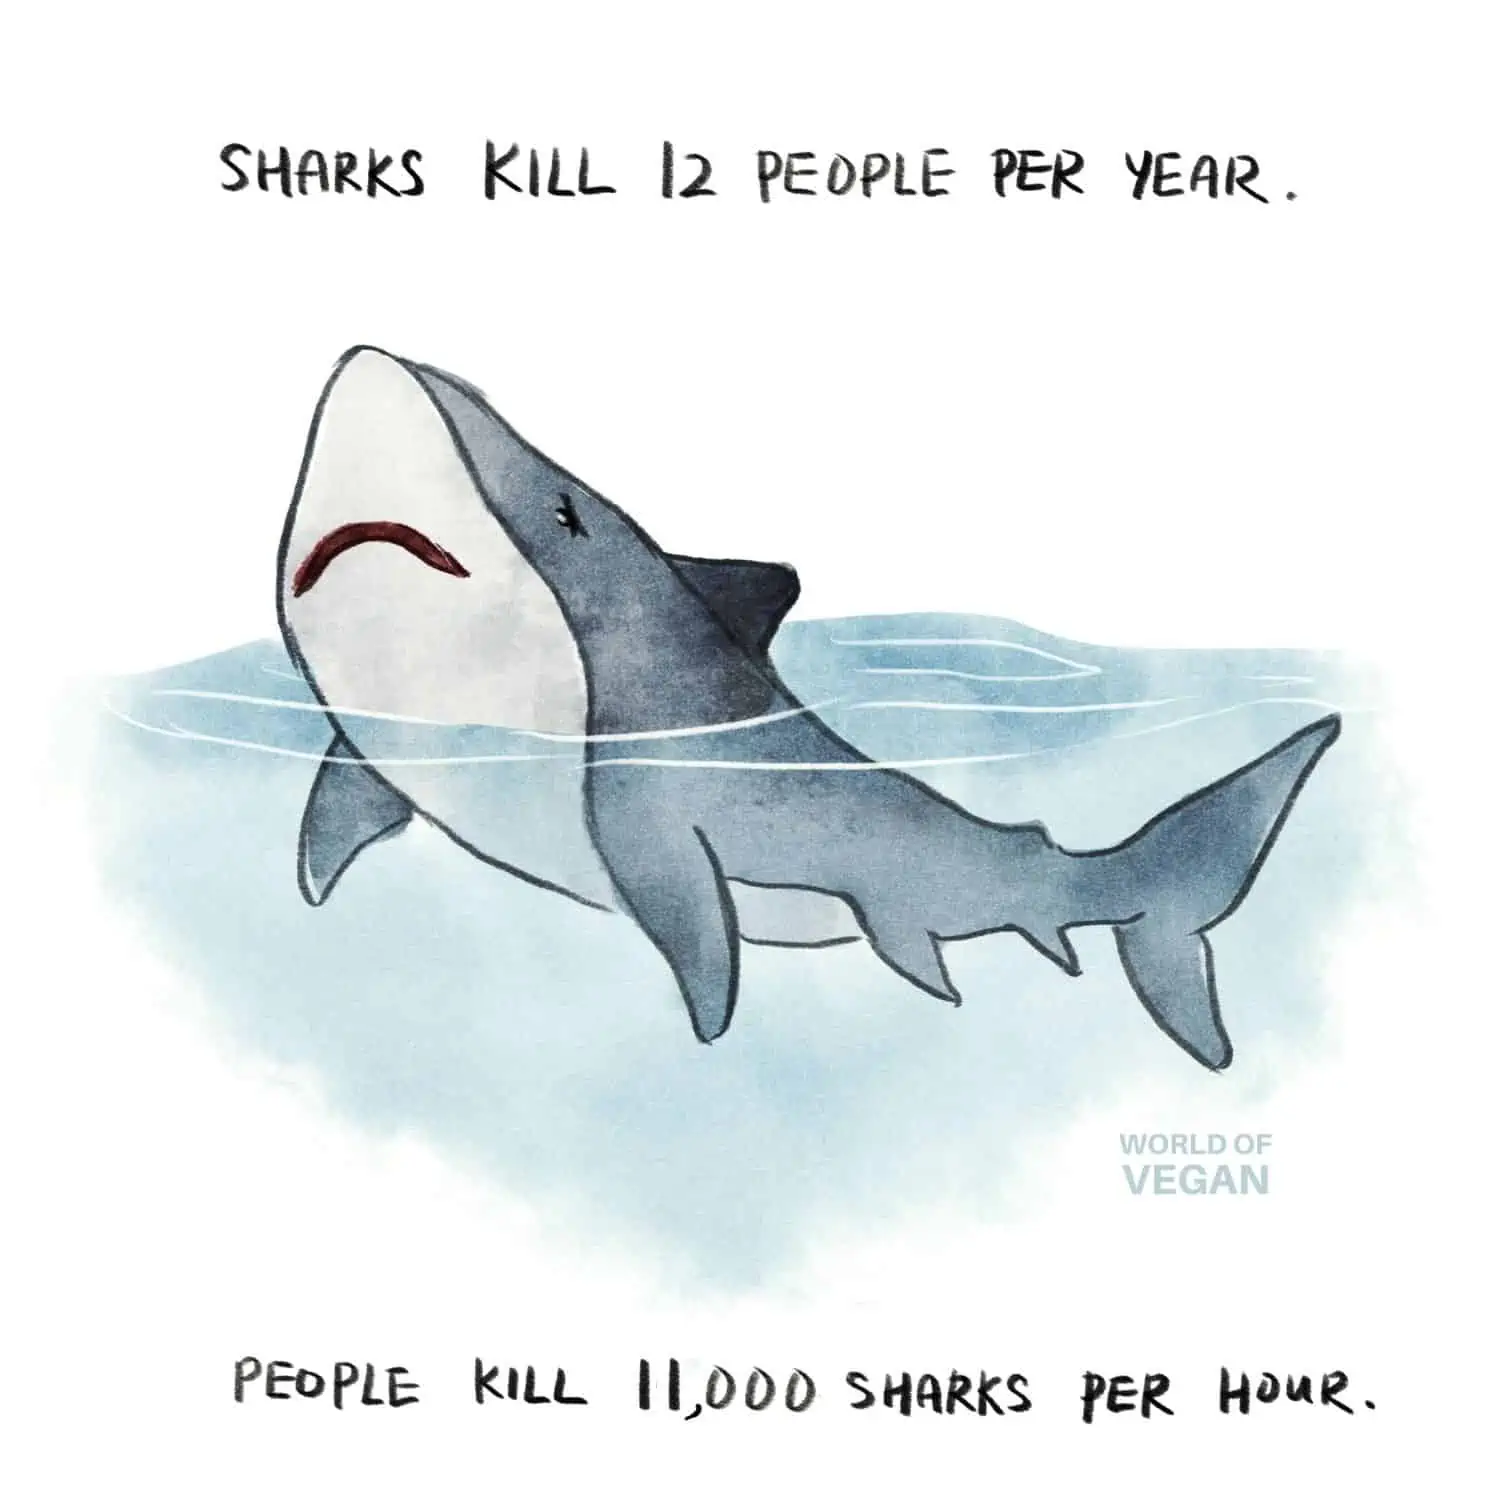 World of Vegan Shark Art Number Sharks Killed vs Humans Killed Per Year